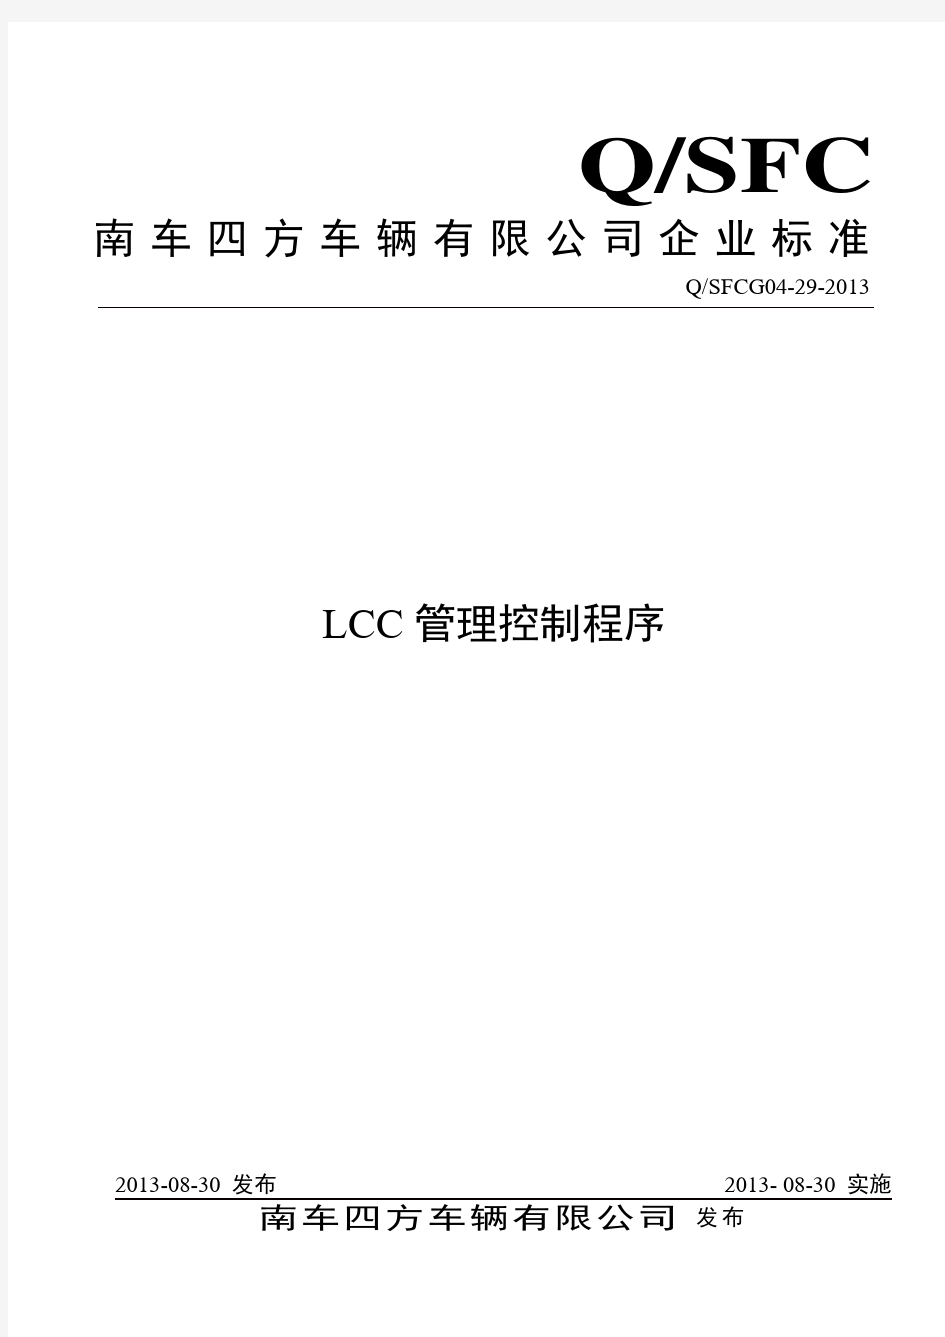 LCC管理控制程序